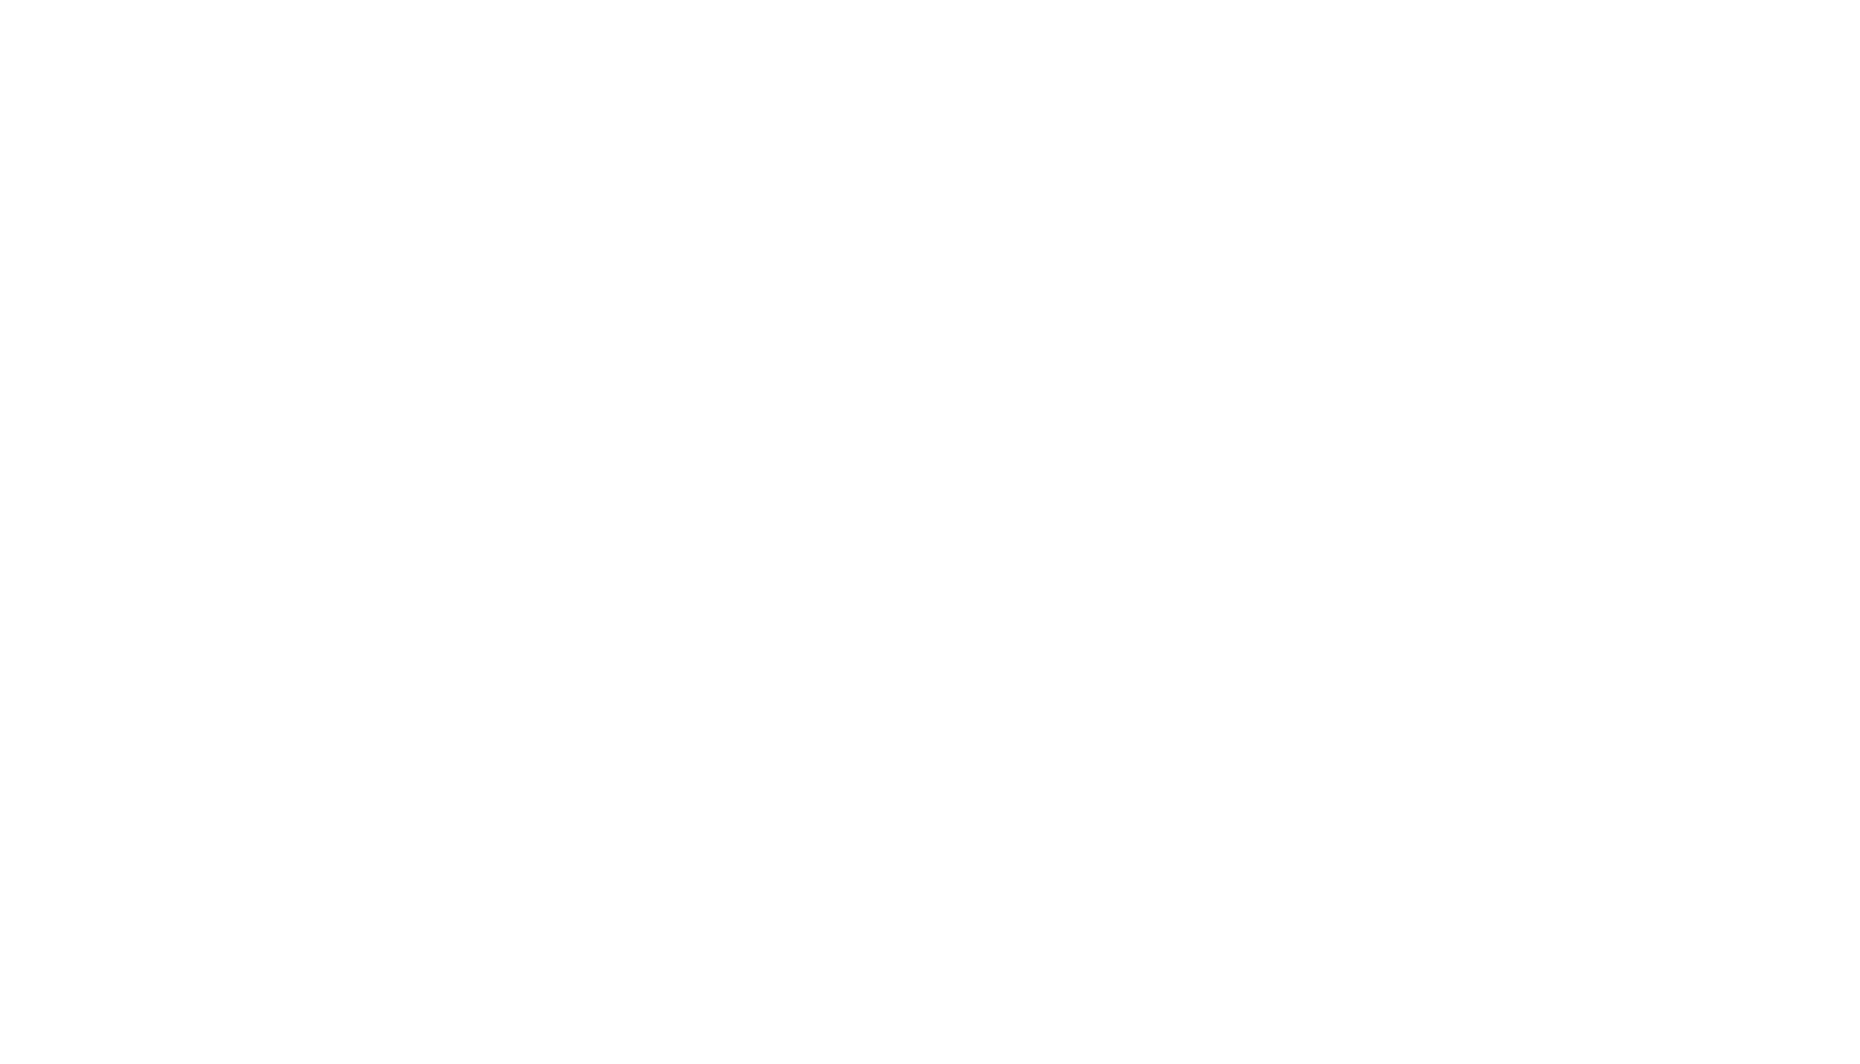 あなたが思い描く撮影を提供する 奈多写真は福岡県福岡市を中心に活動する写真屋です。奈多写真